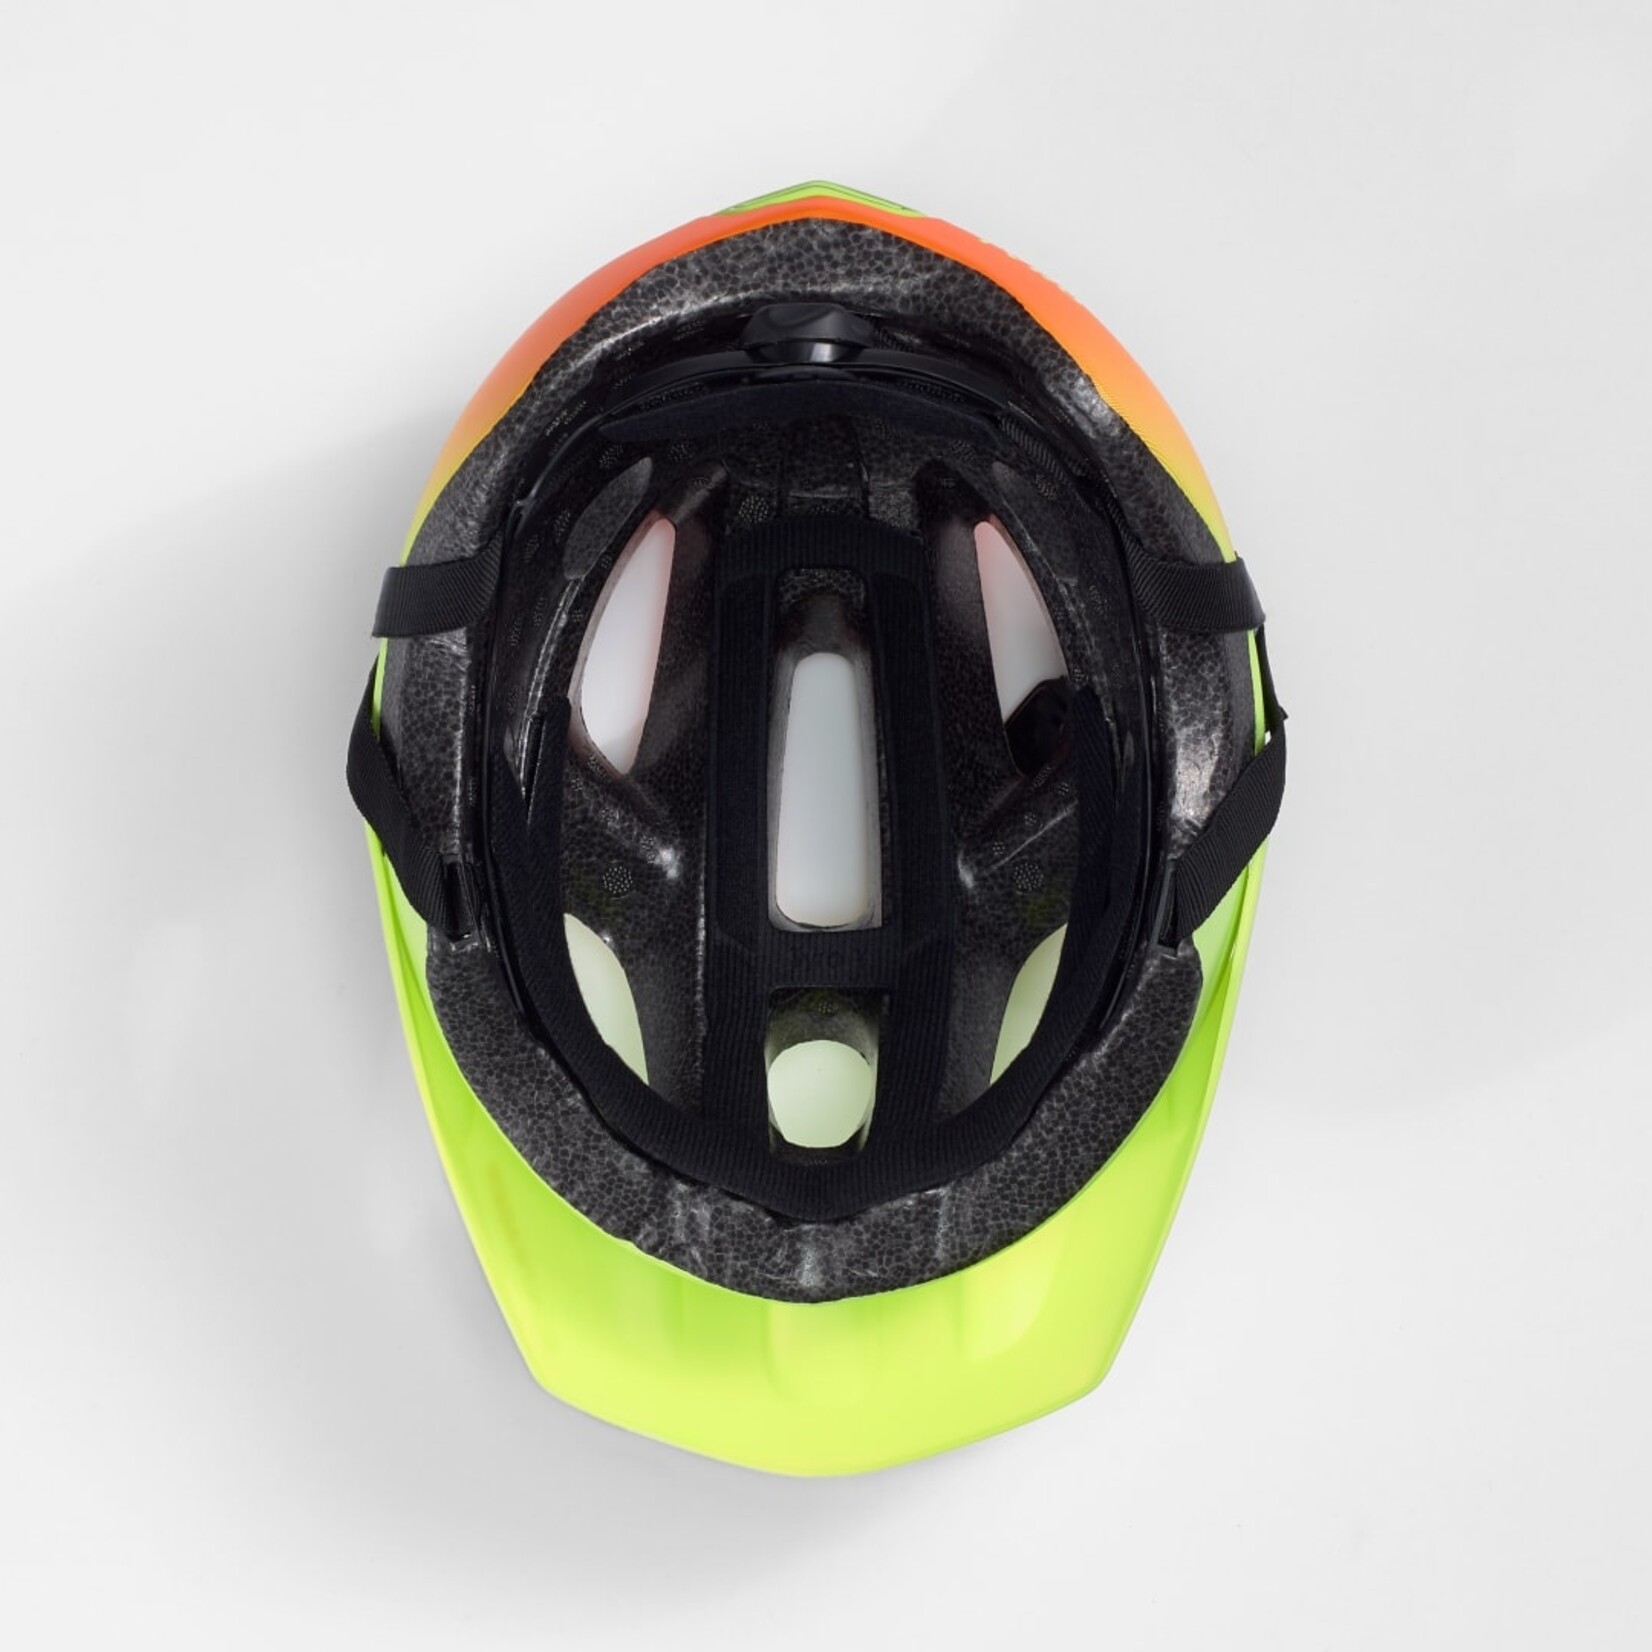 BONTRAGER Bontrager Tyro Children's Helmet, 48-52cm